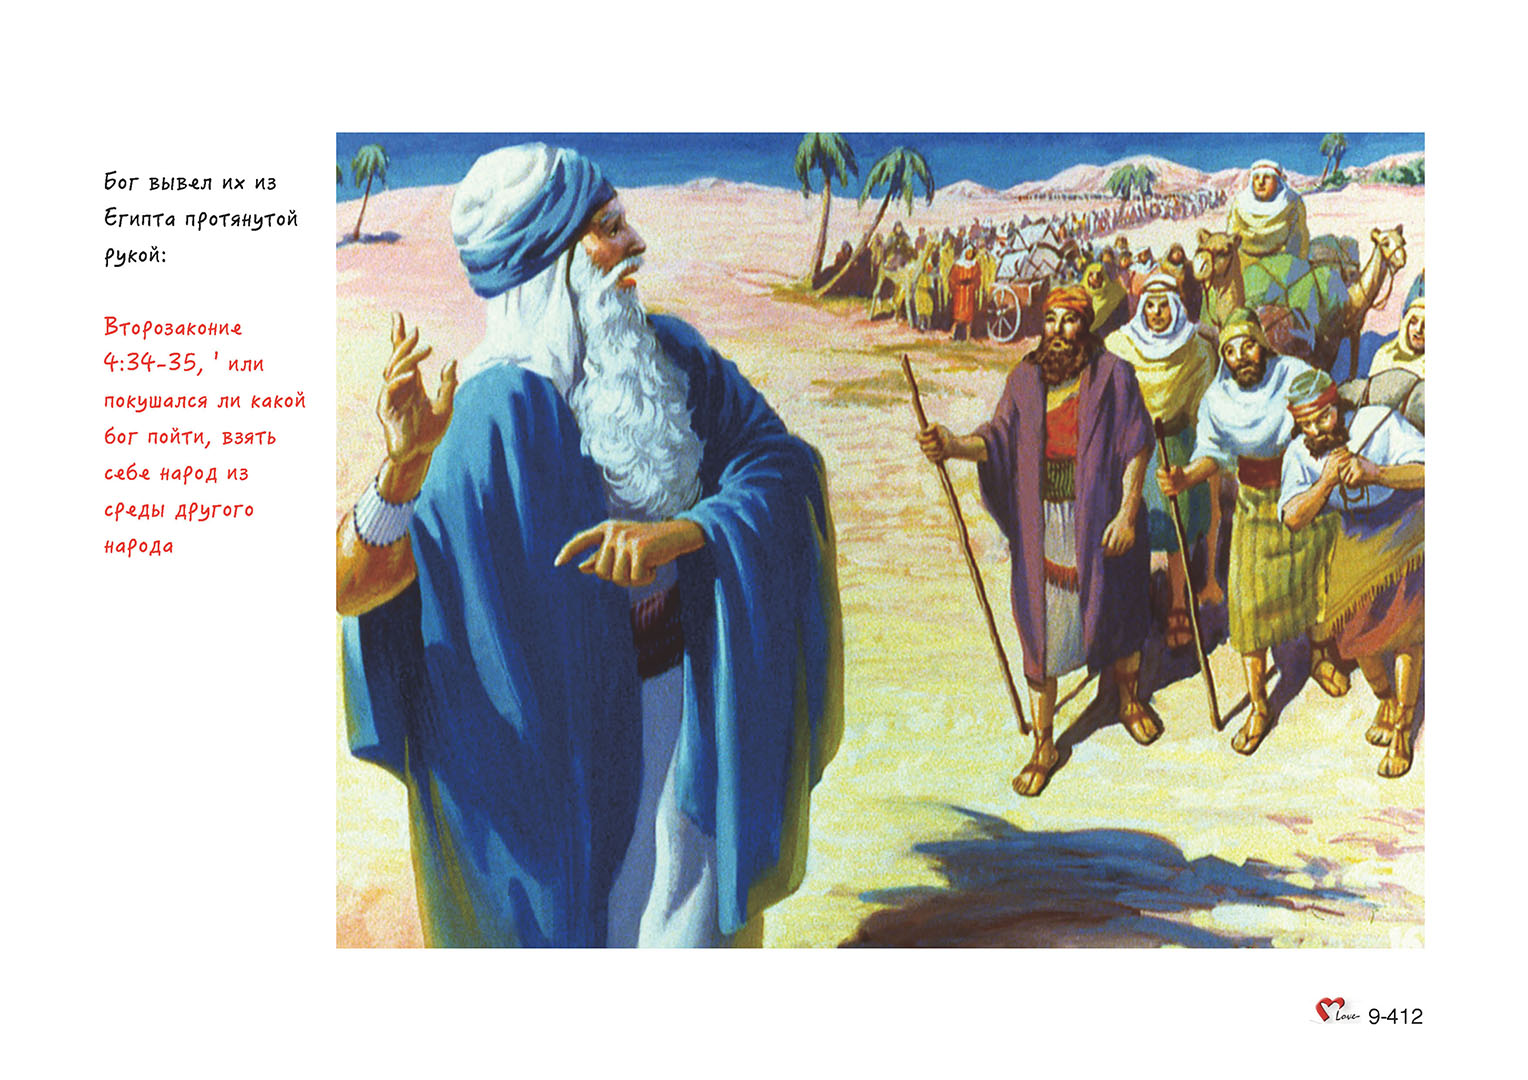 Книга торы о скитаниях евреев по пустыне. Израильский народ в пустыне. Израильтяне в пустыне 40 лет.